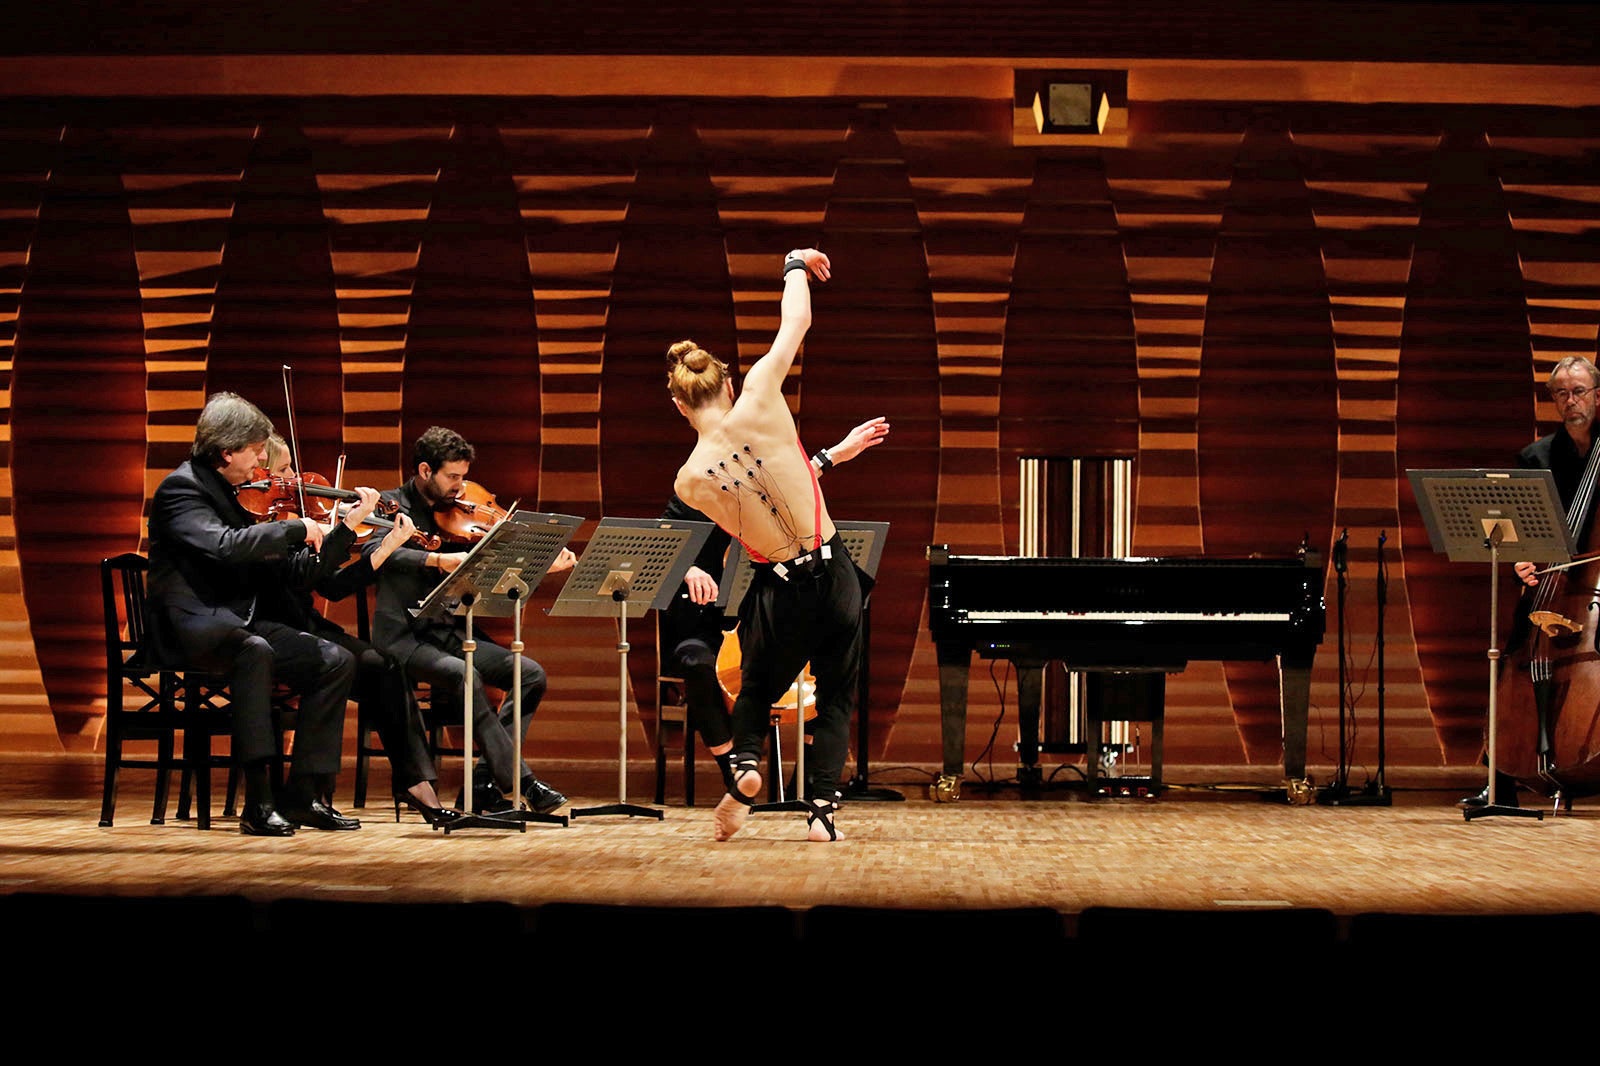 Inteligencia artificial de Yamaha transforma a un bailarín en pianista